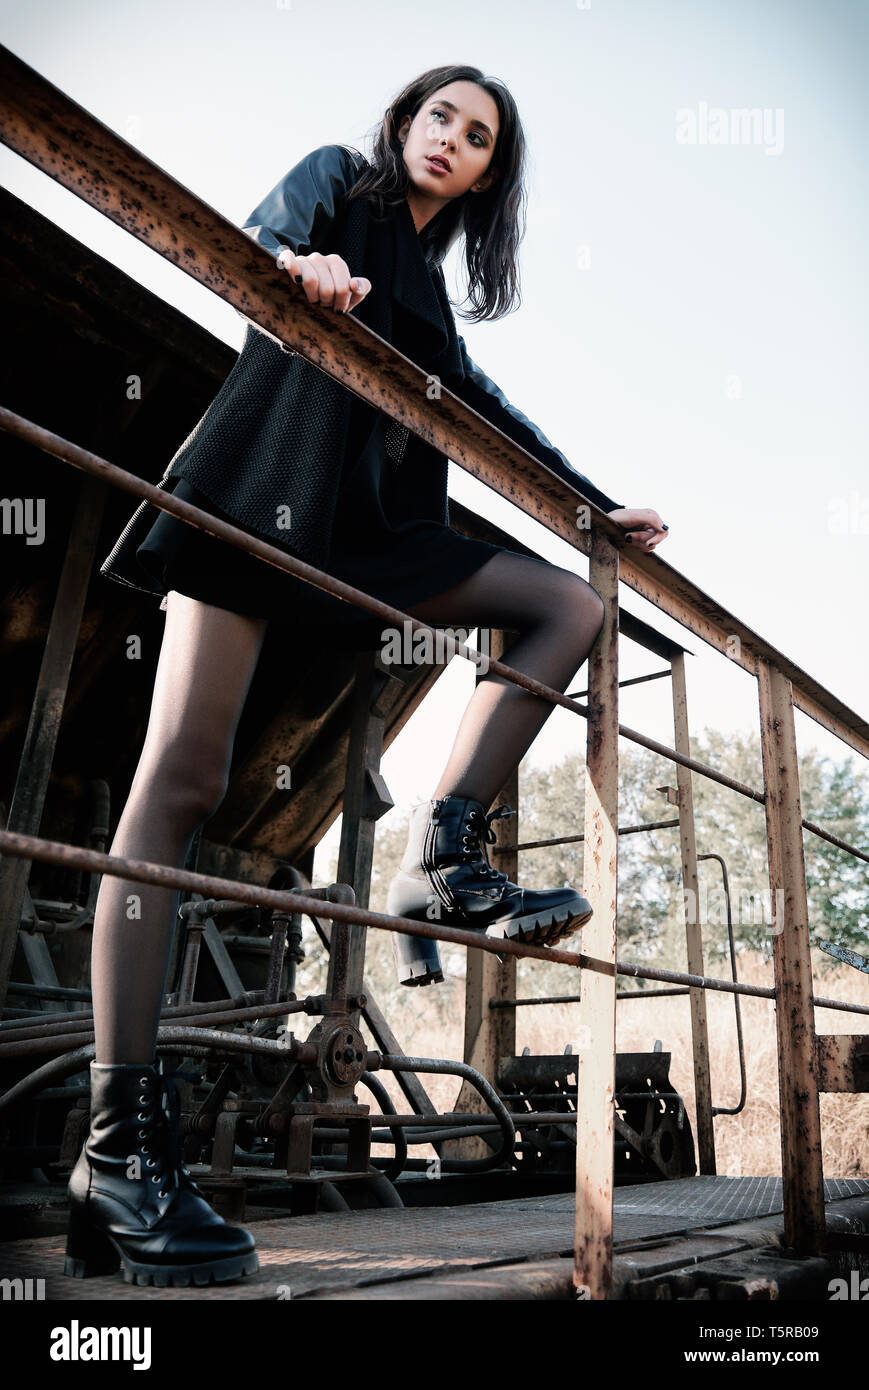 Moda shot: ritratto della bella ragazza rock (modello informale) vestita di nero giacca e gonna permanente sulla carrozza del treno Foto Stock